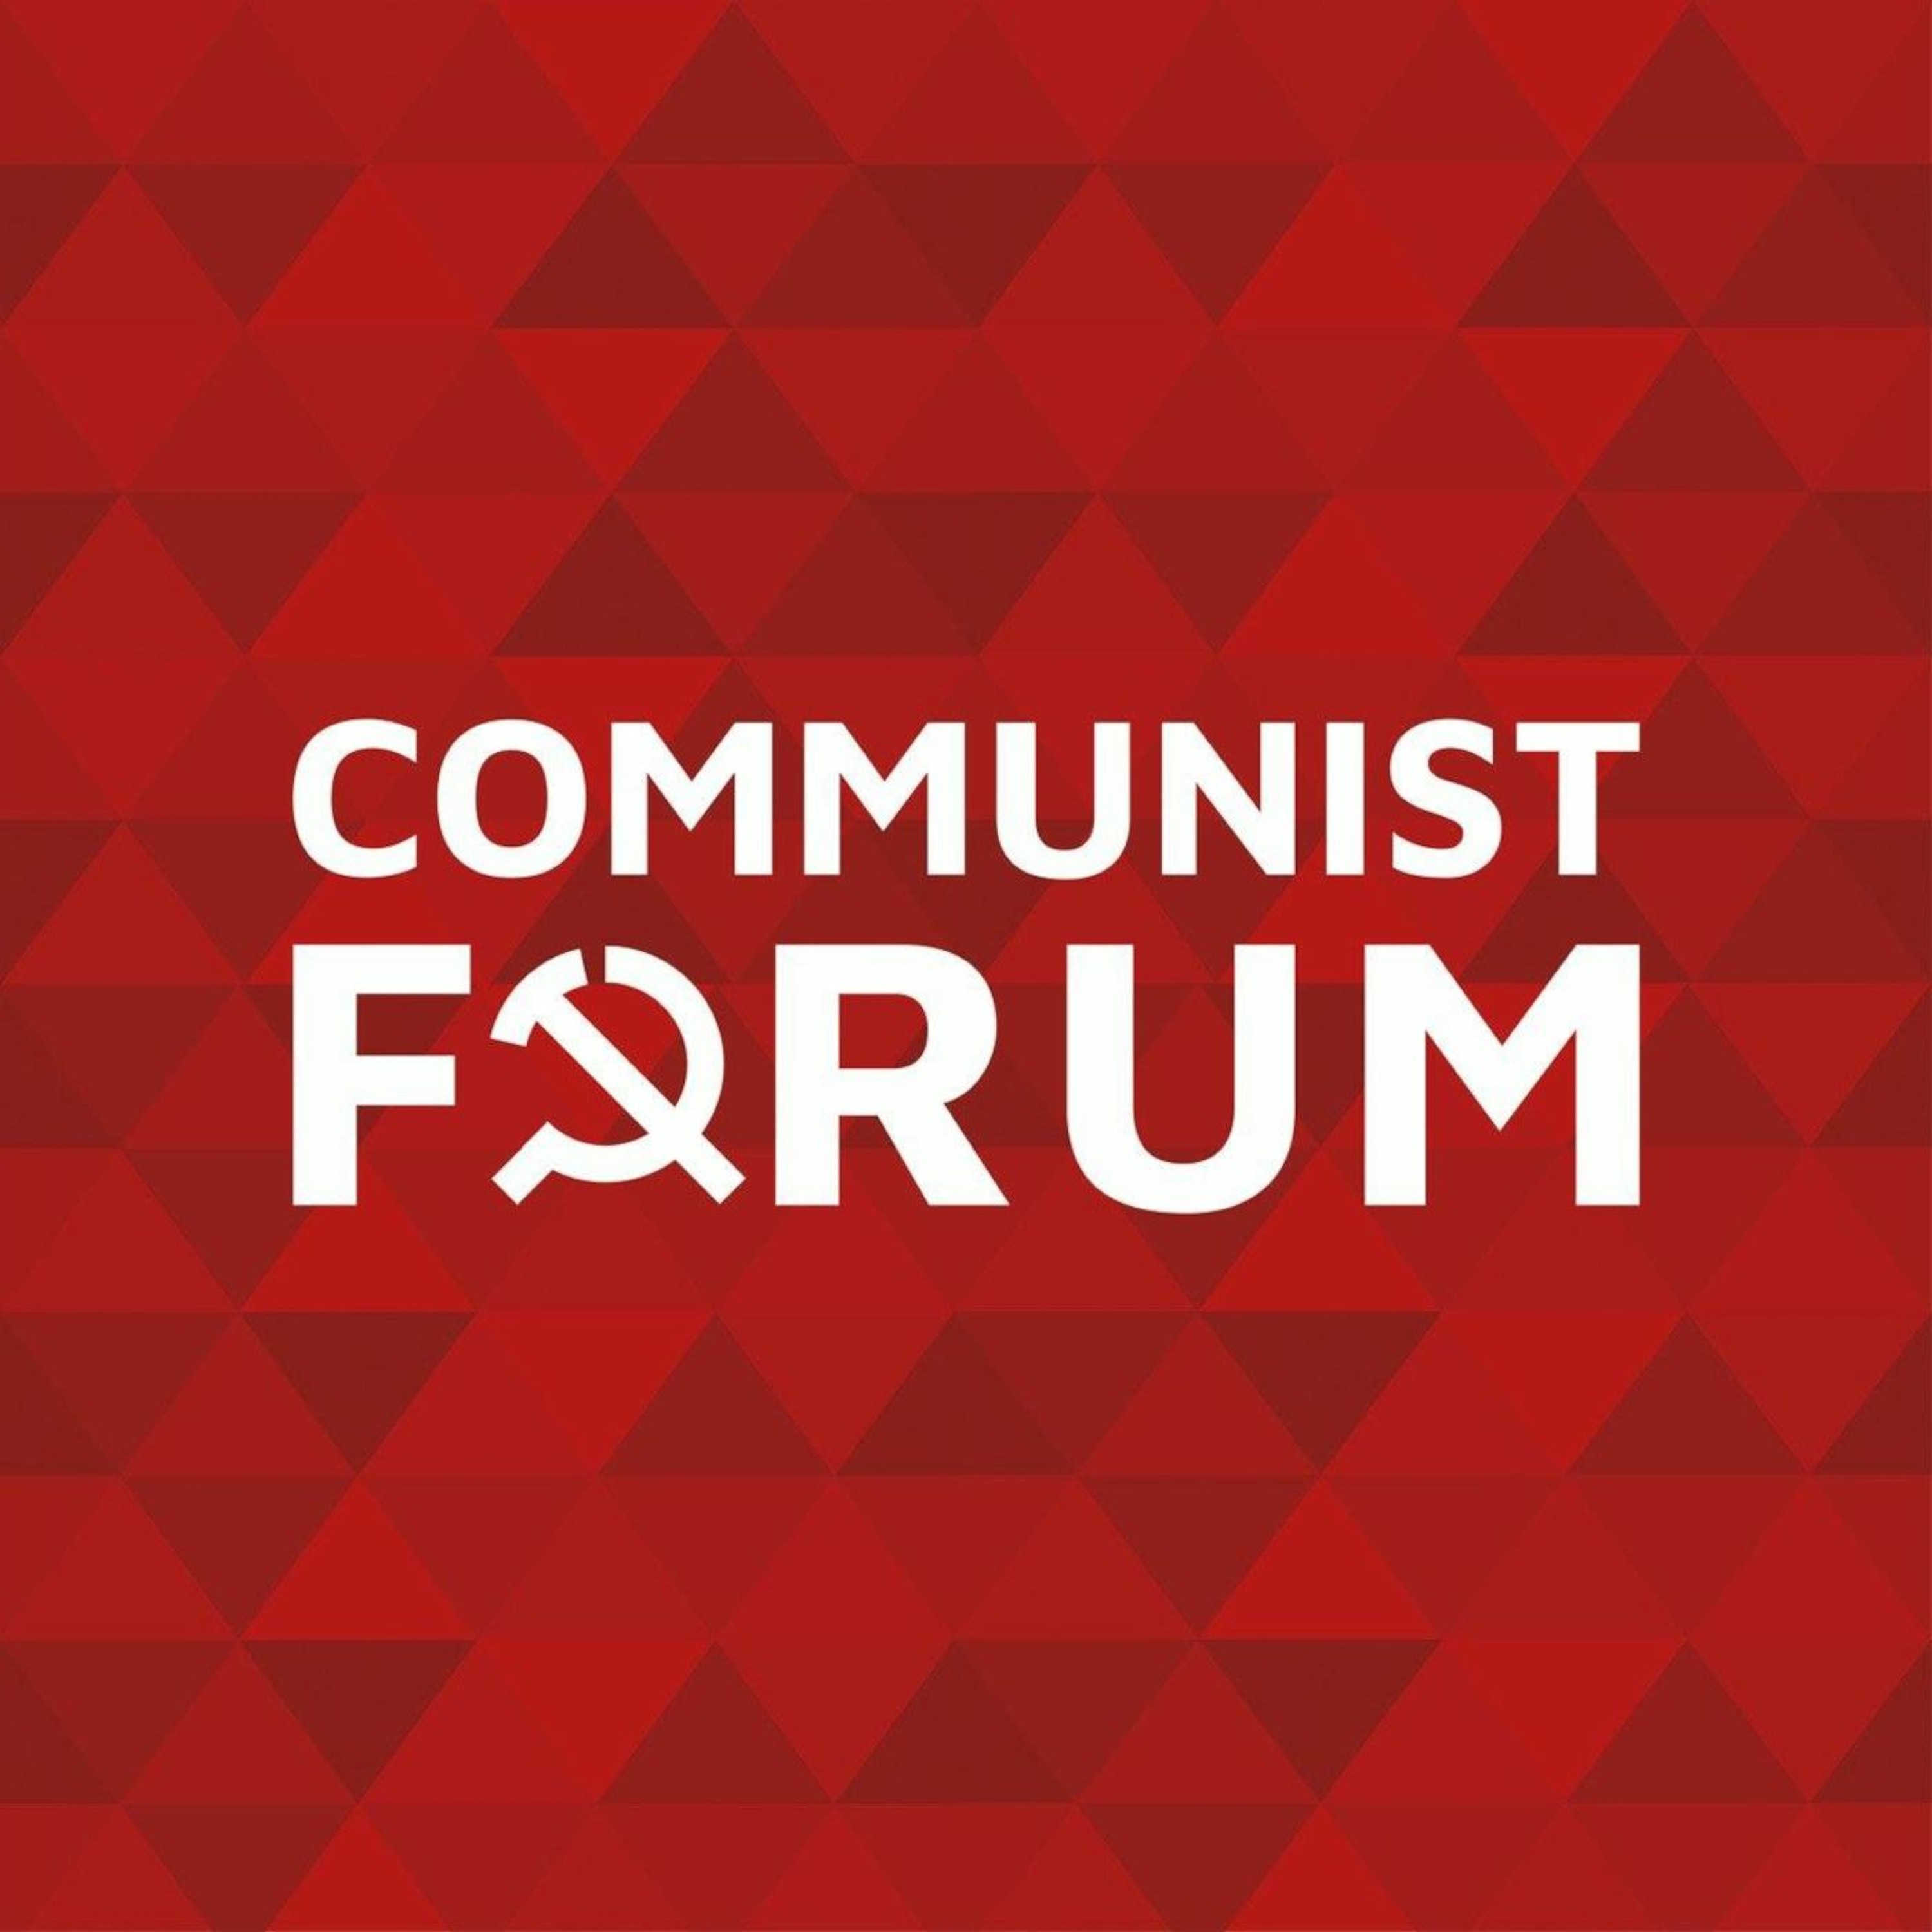 Online Communist Forum - 5-9-2021